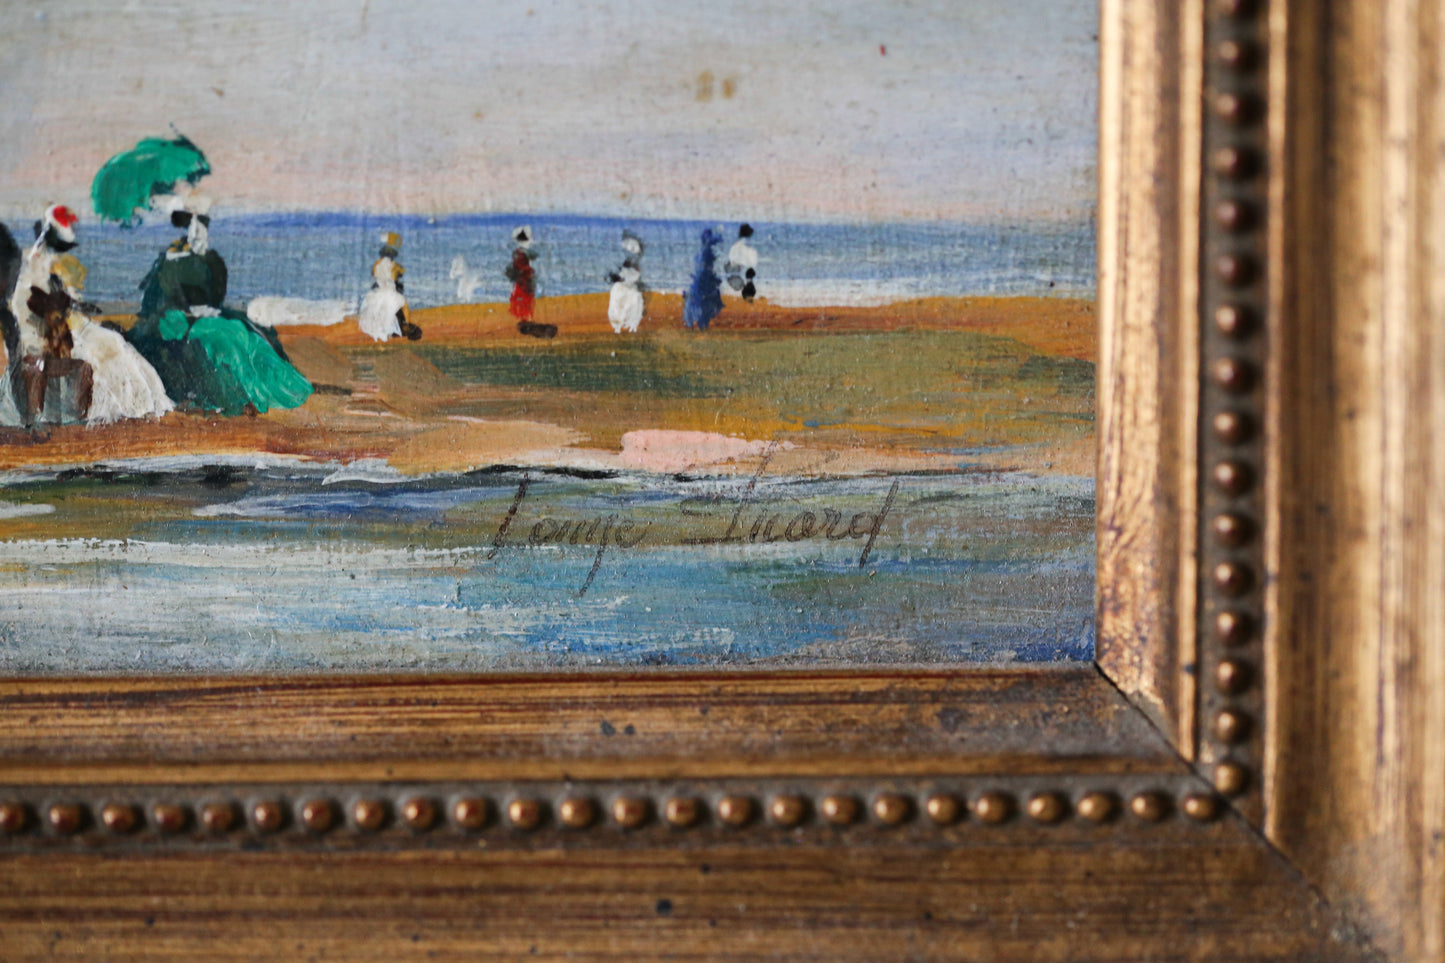 Louise Picard peinture sur bois du début du XXe siècle "Scène de plage animée"